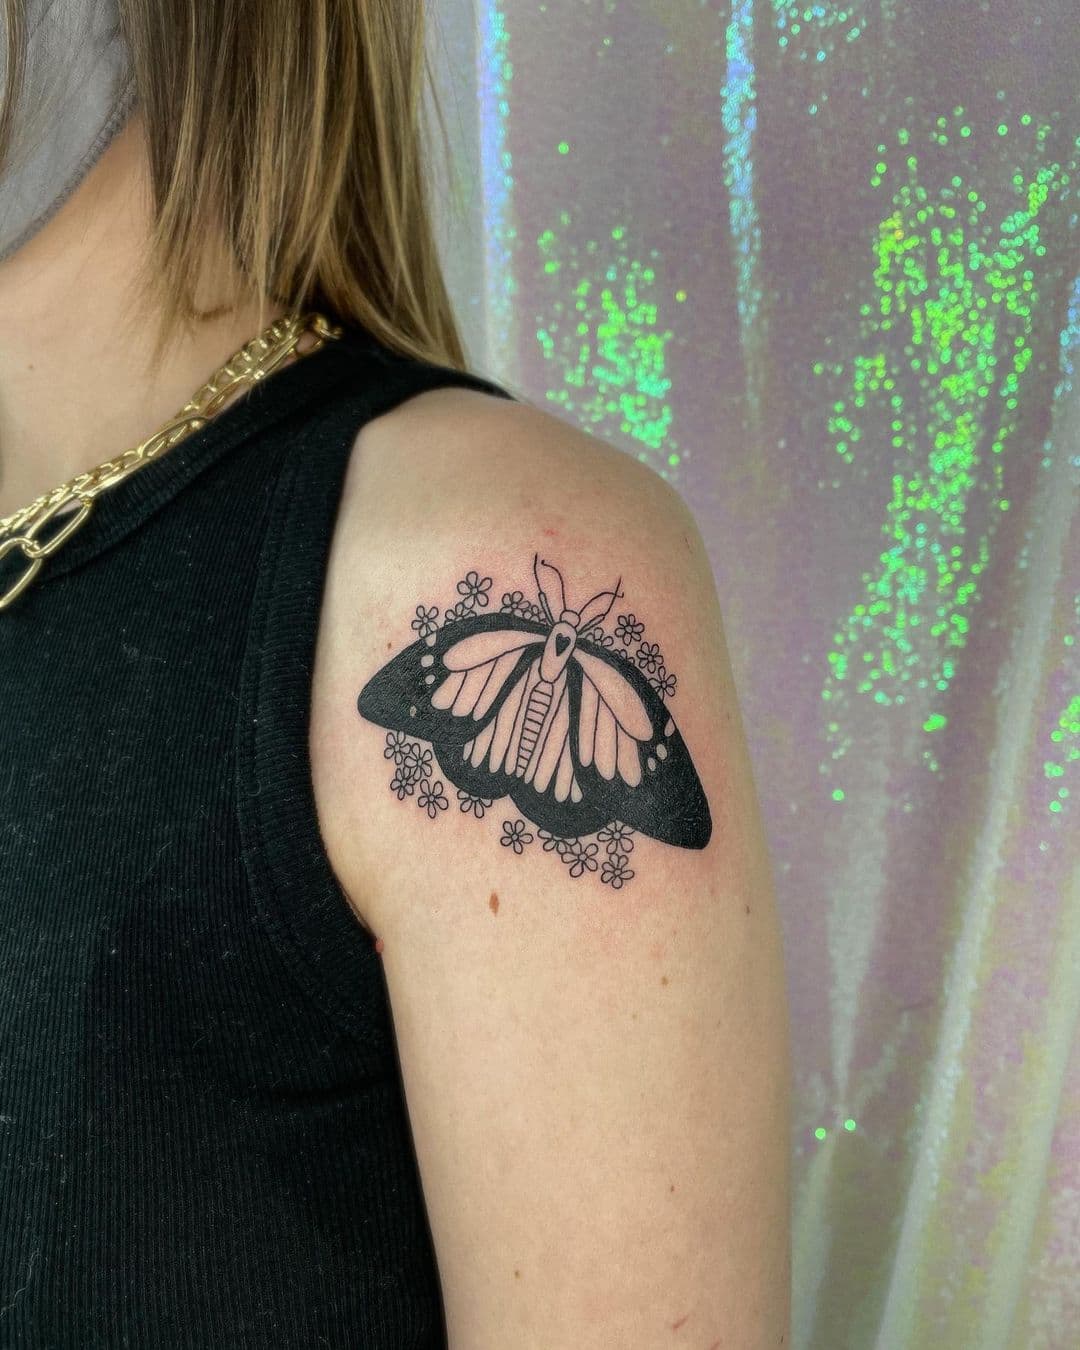 Tigerbutterfly by Jessi Lawson at Wild Cat Tattoo Minneapolis  rtattoos